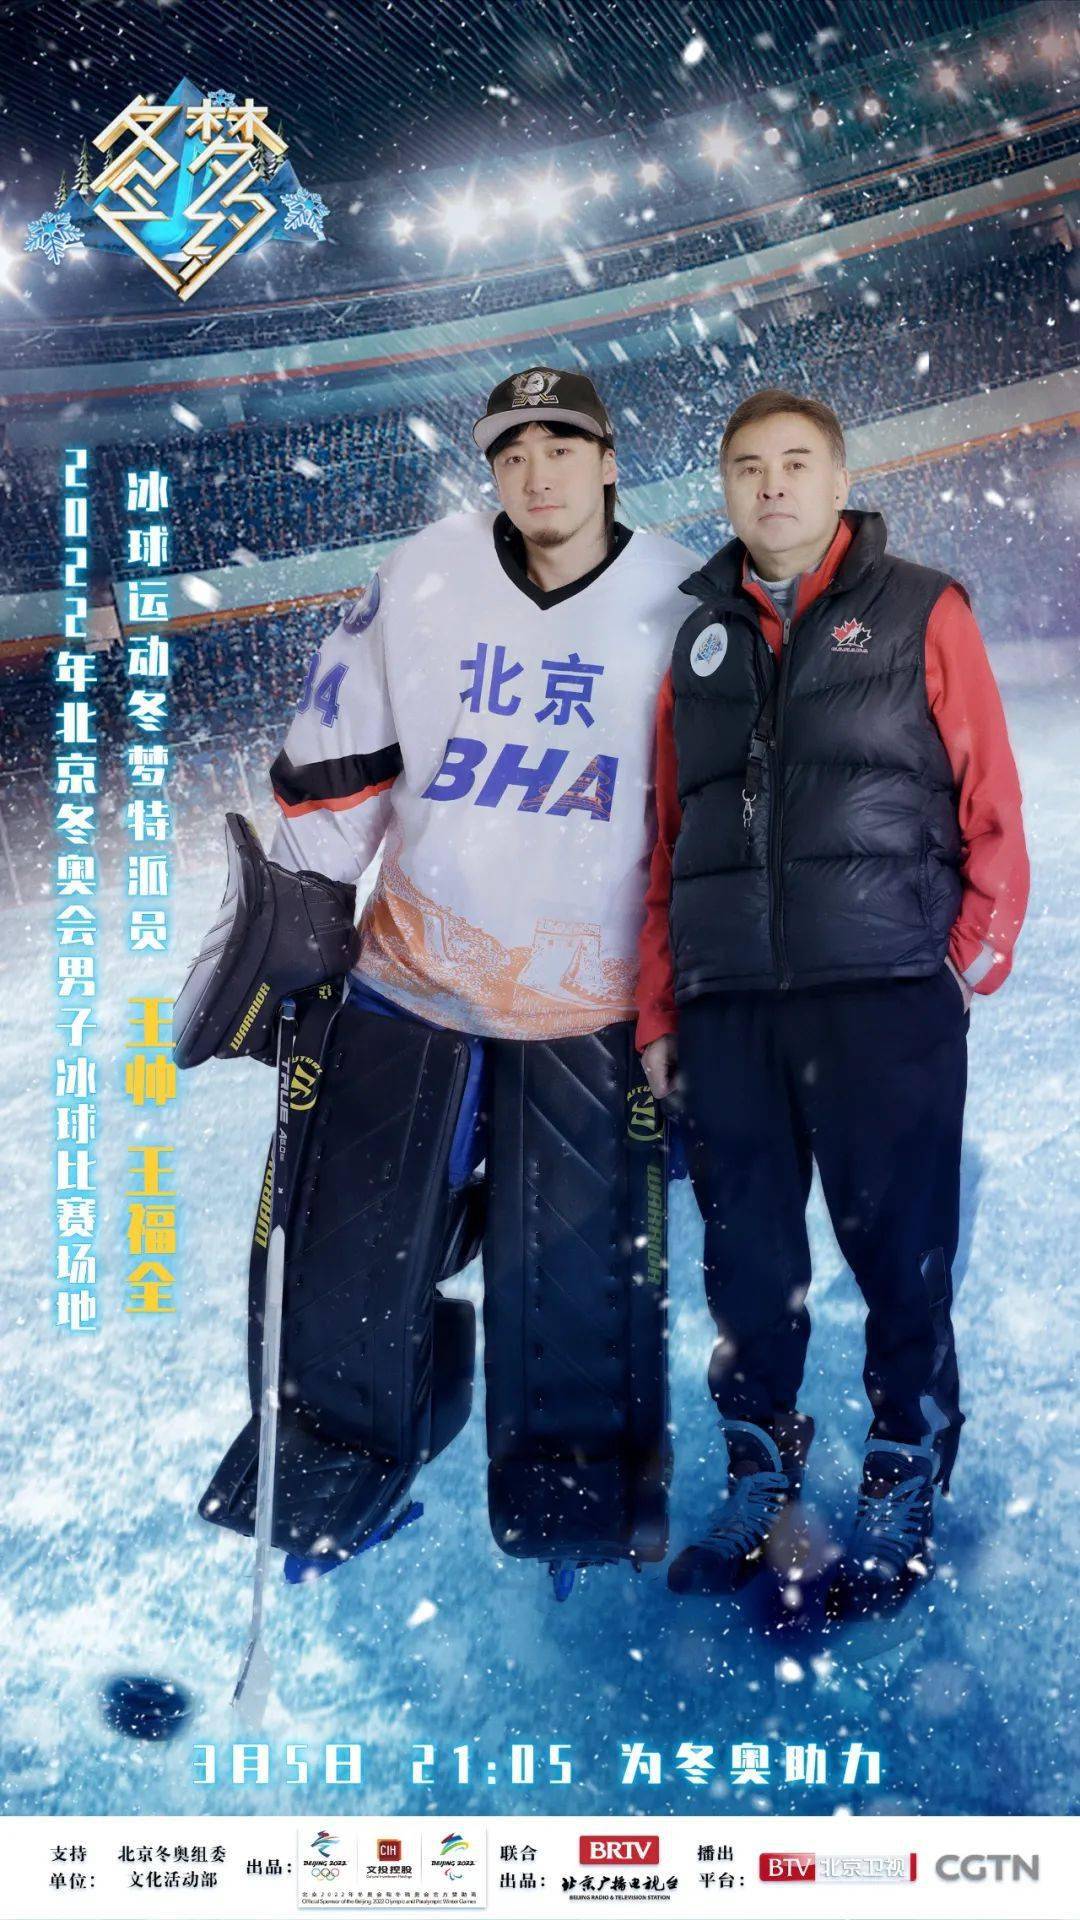 官宣 肖战加盟 冬梦之约 带您体验竞技精神 探索冰球世界的秘密 北京